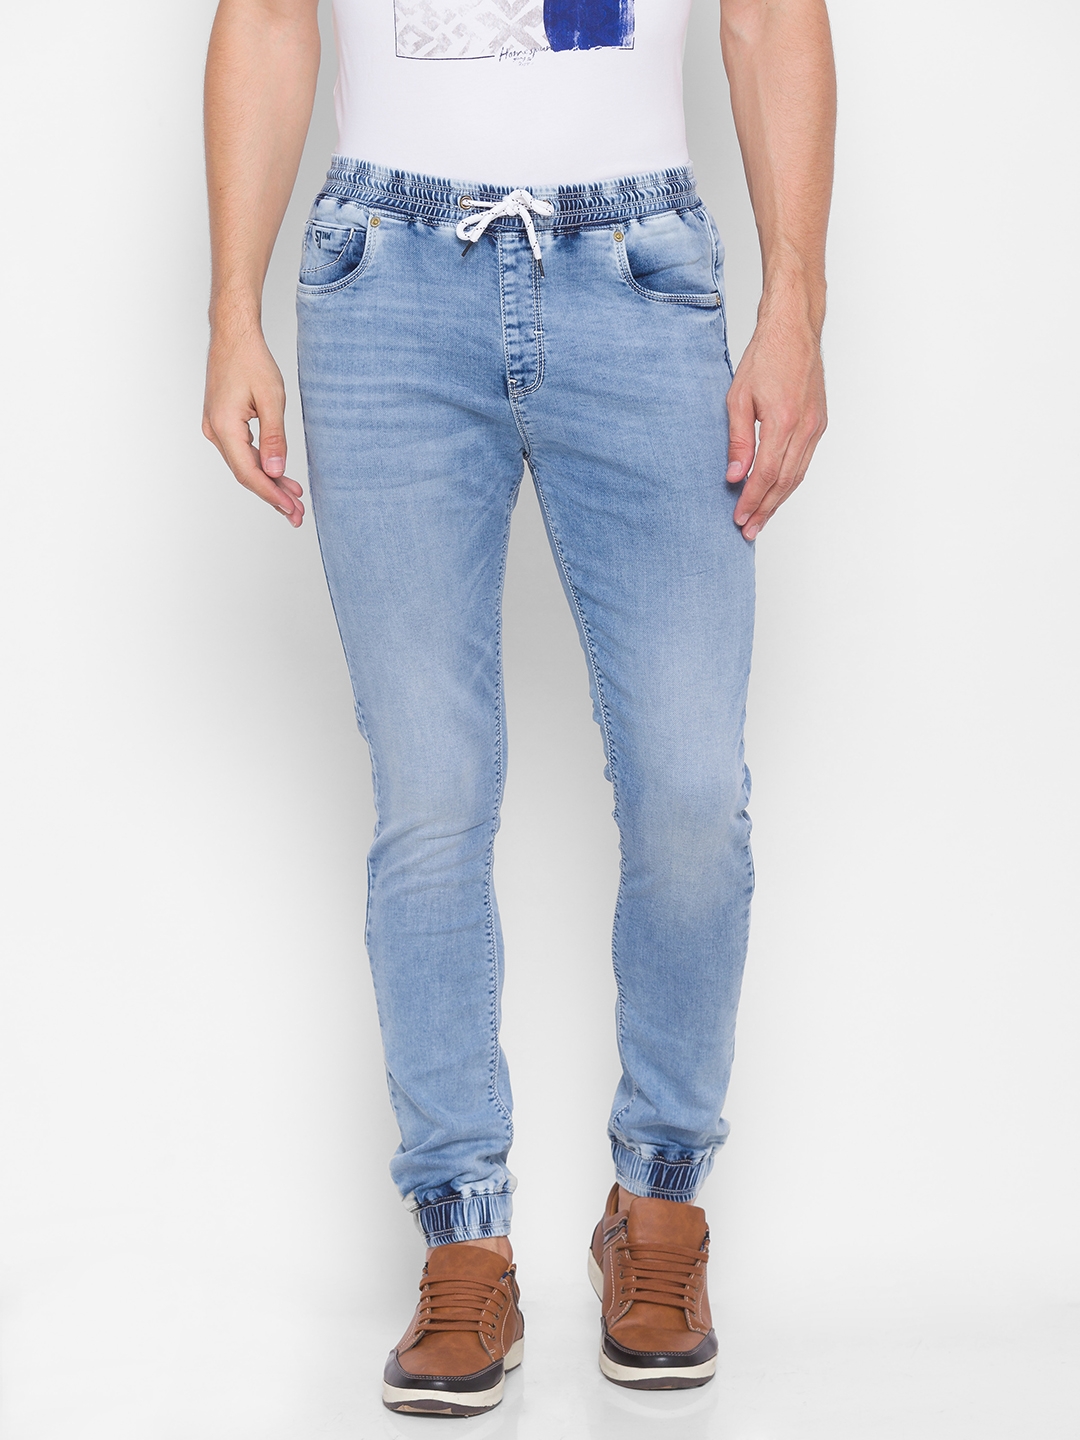 spykar | Men's Blue Cotton Solid Joggers Jeans 0